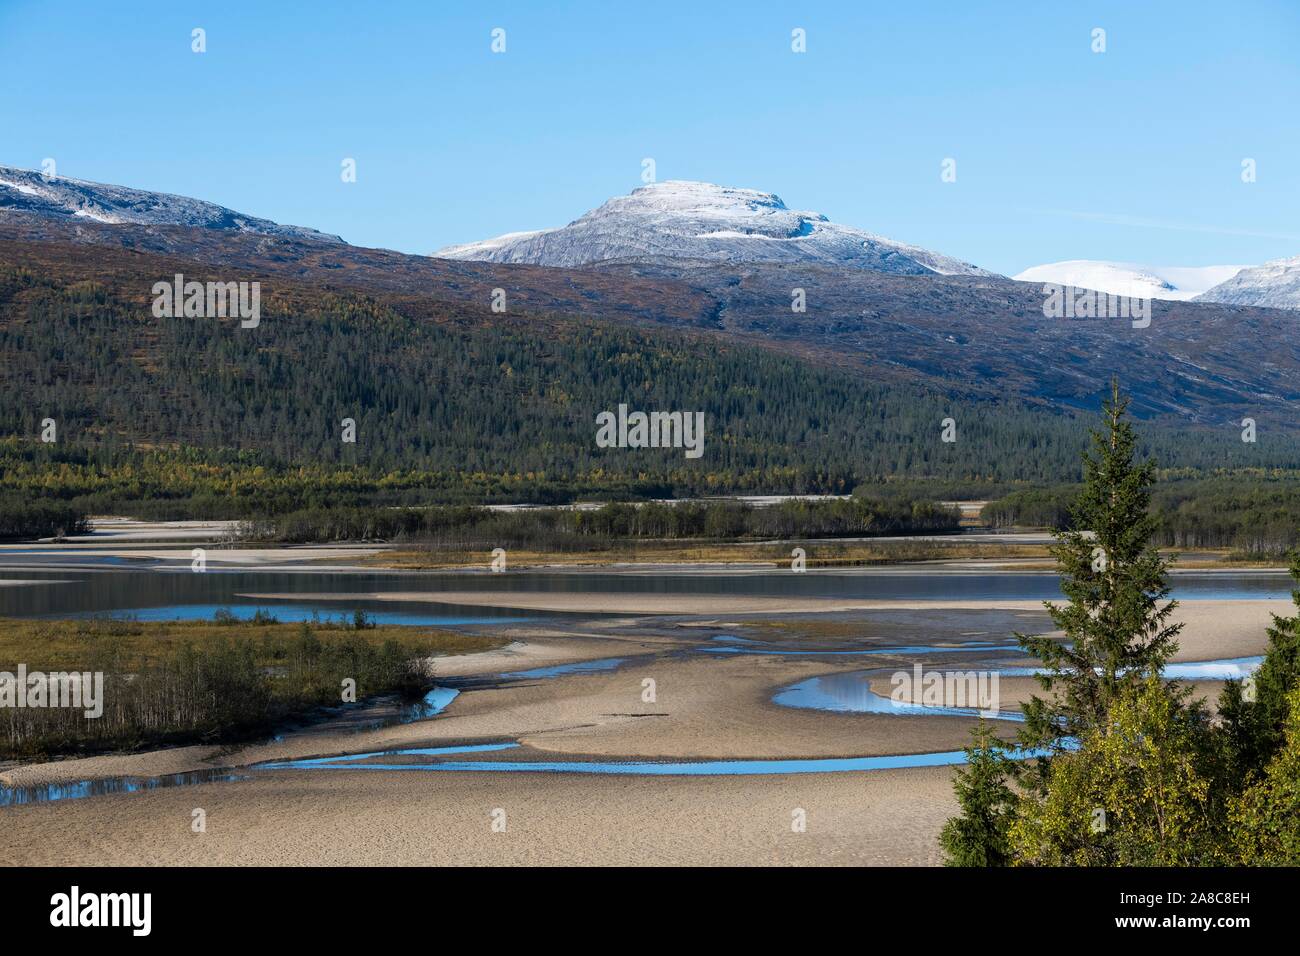 Wide river course of the Glomaga, near Mo i Rana, Nordland, Norway Stock Photo